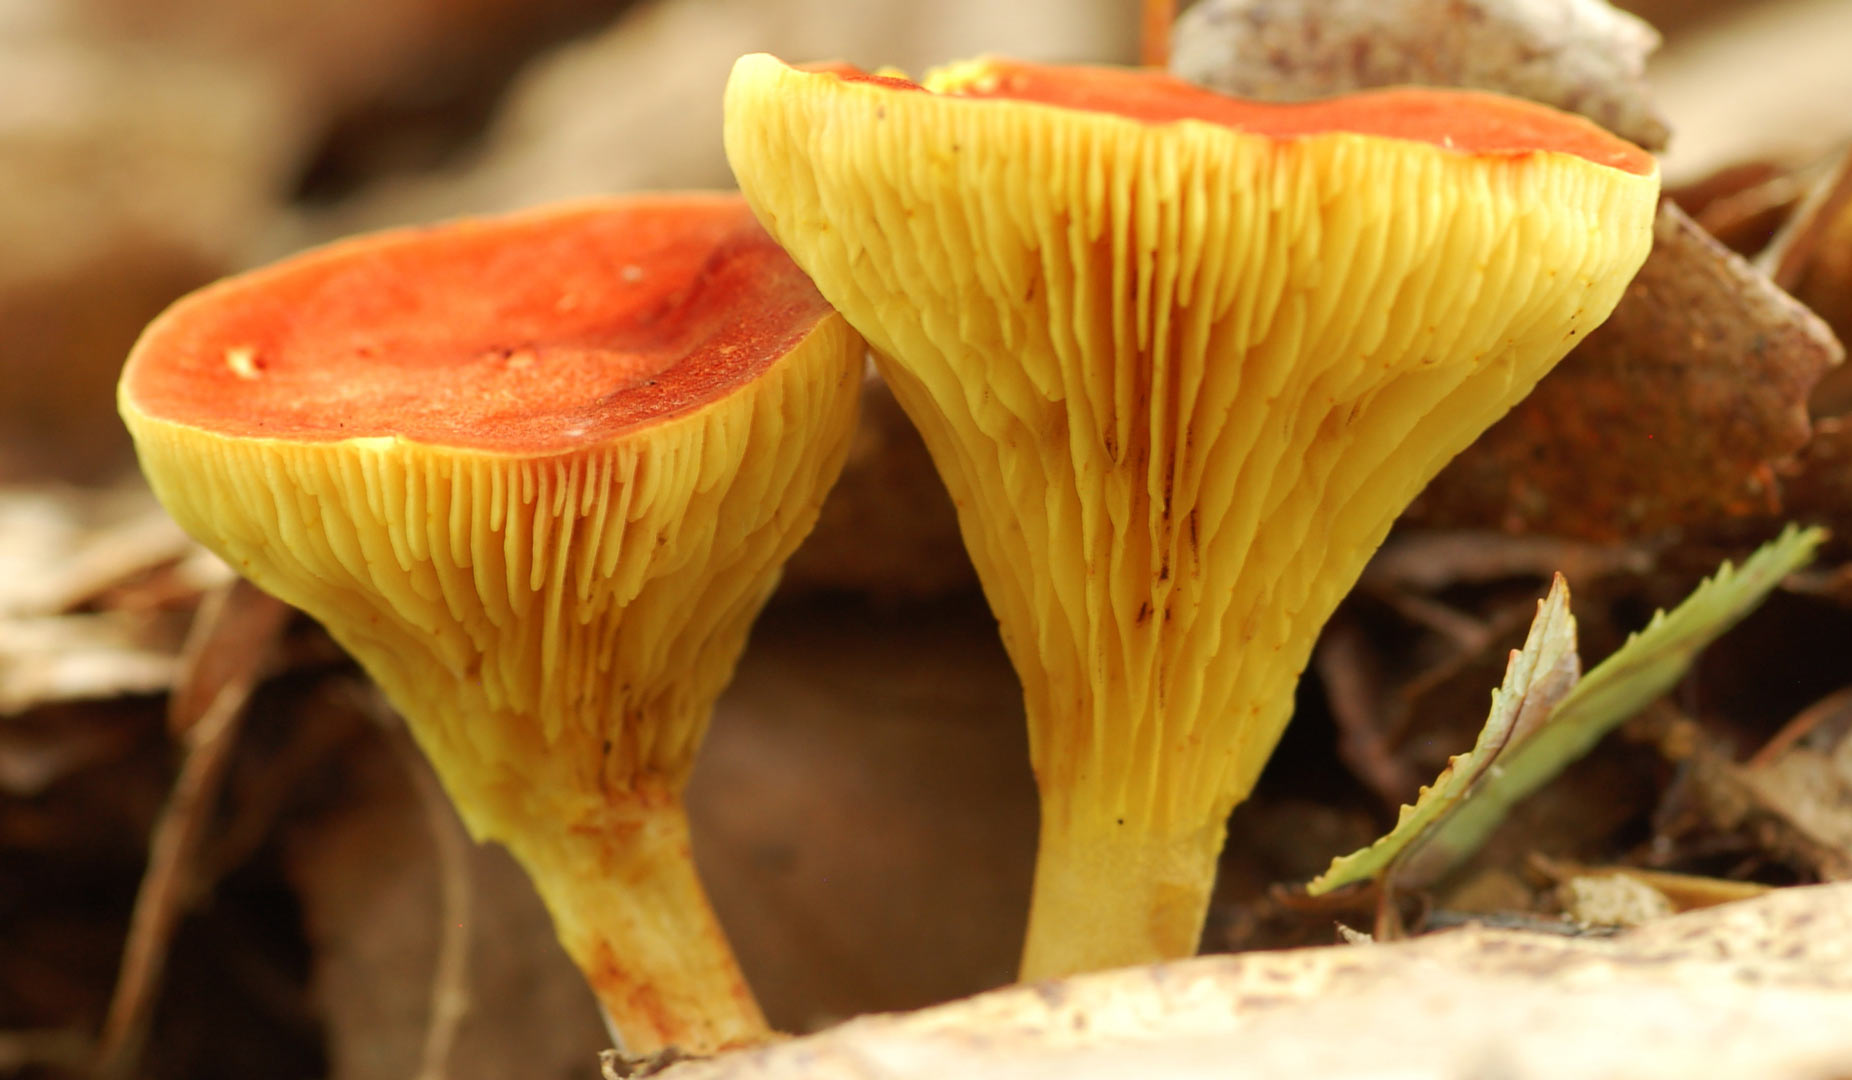 Bolete mushrooms at Clear Creek